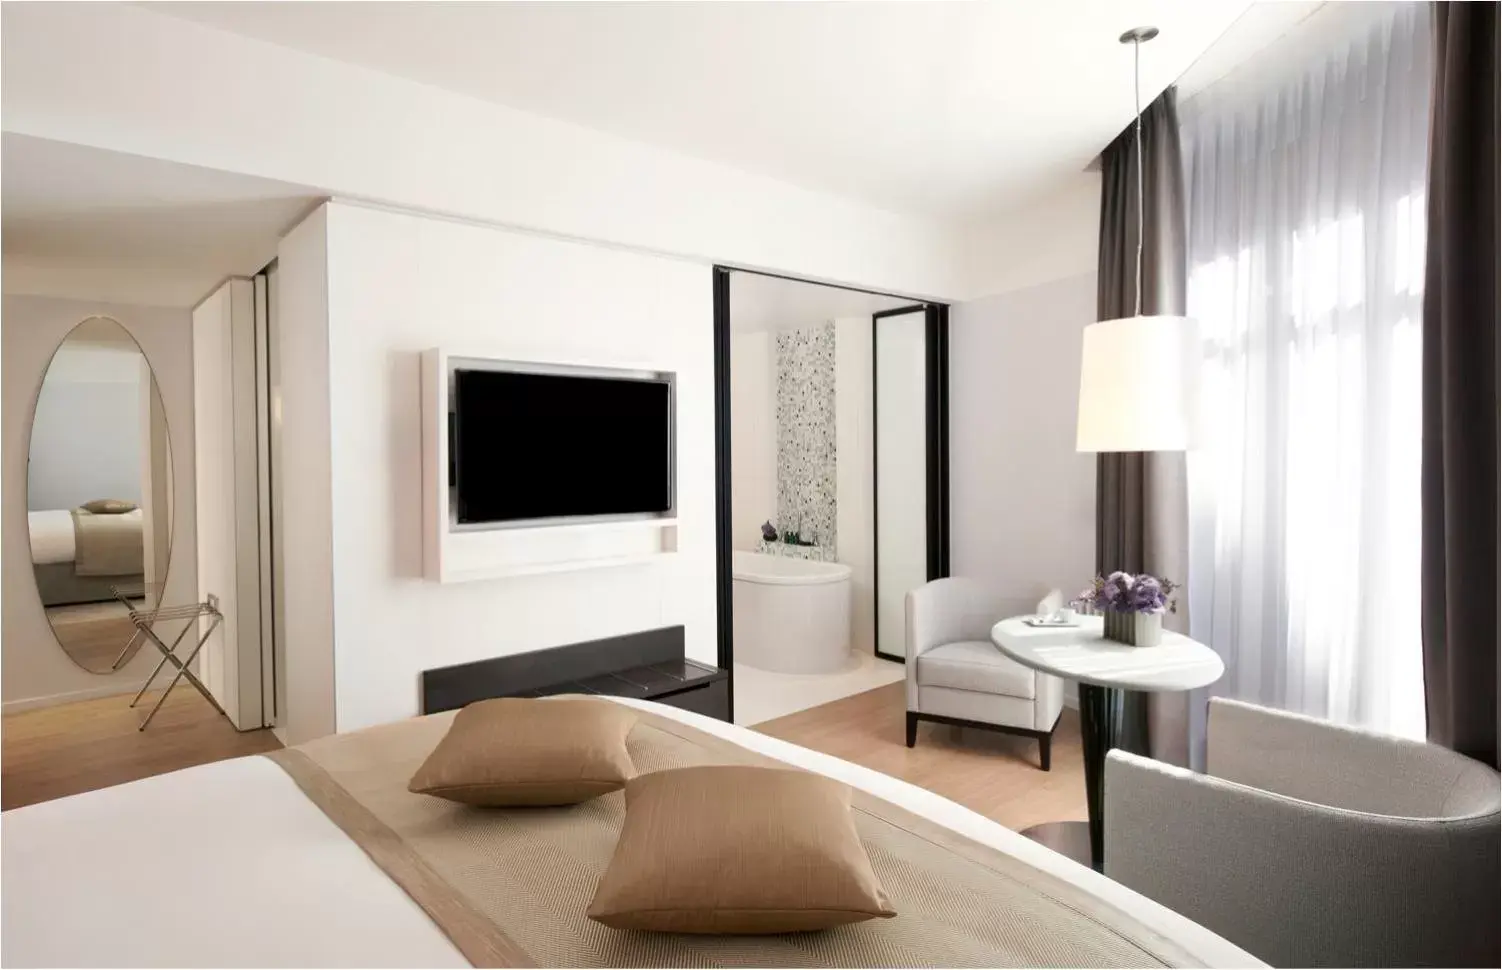 Bedroom, TV/Entertainment Center in Sofitel Paris Arc De Triomphe